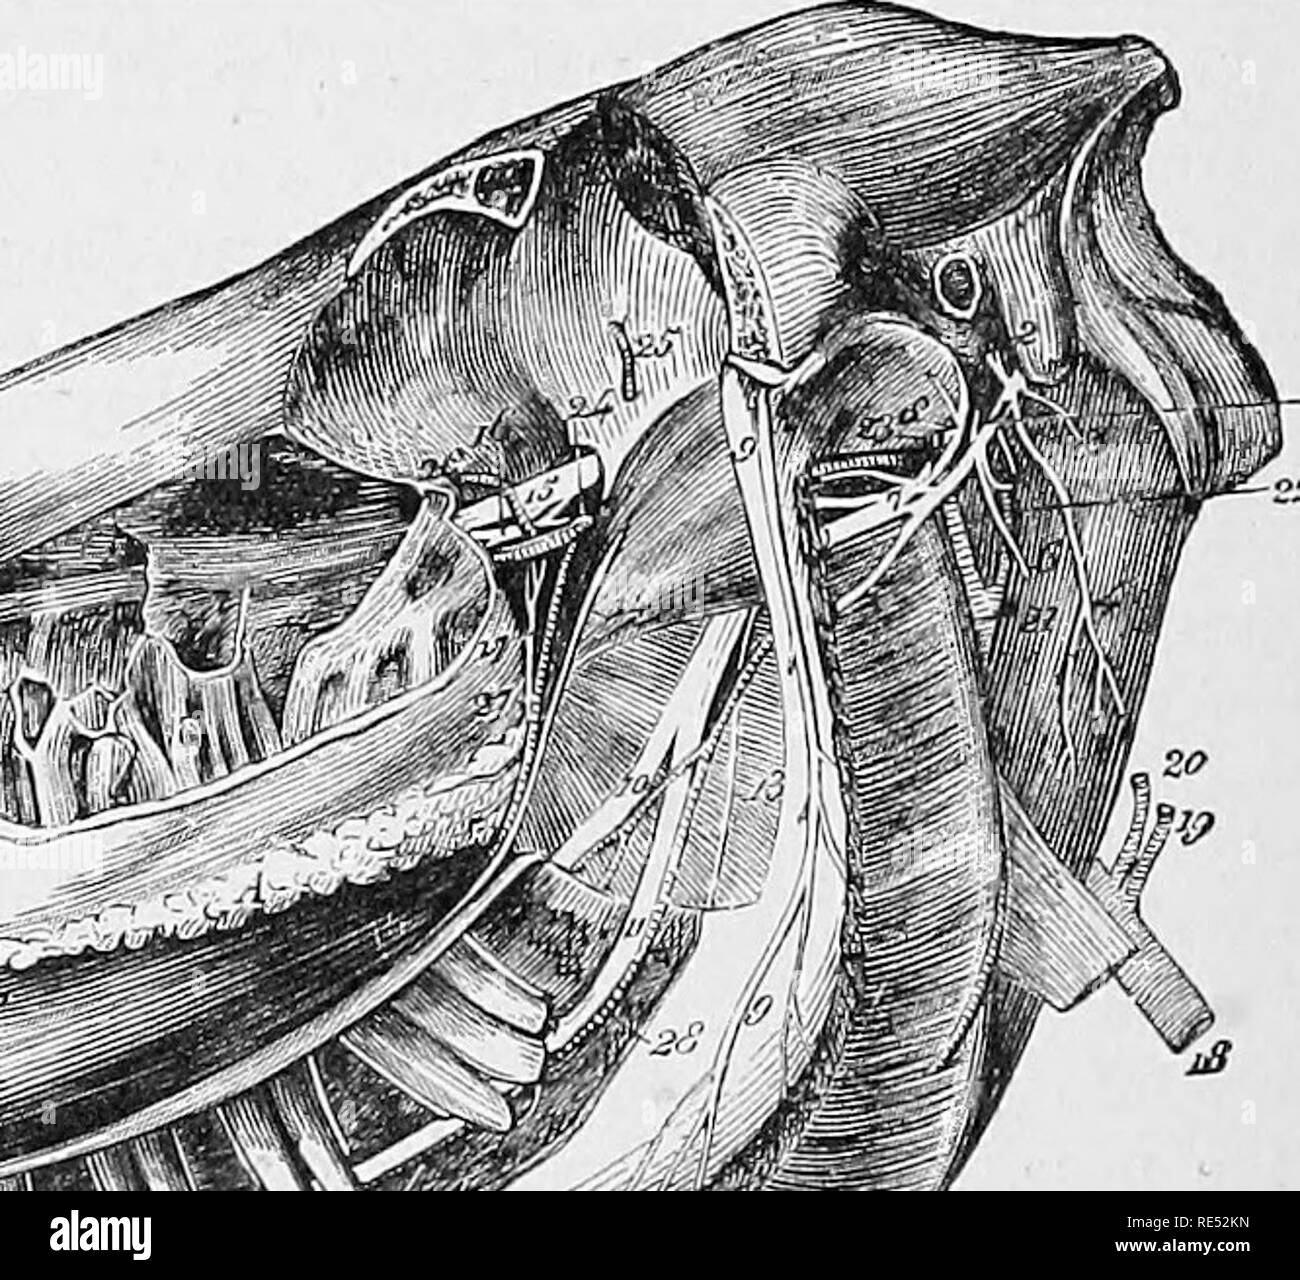 . Die vergleichende Anatomie der domestizierten Tiere. Veterinär Anatomie. r mpi "ALLGEMEINE ANSICHT DES SDPEEIOE UND INFERIOE MAXILLARIS nerven. Das Auge hat gestrichen wurde, nach dem Sägen durch und Entfernen der Orbitale und zygomatic Prozesse. Die Kieferhöhlen durch eine Kollision ausgesetzt worden sind oder Meißel, der Masseter muscle entfernt, und die minderwertige Oberkiefer eröffnet den Nerv in seiner interosseous coui-se zu zeigen. 1, Gesichts msrve; 2, Herkunft der posterioren congelador Nerv; 3, Filament auf die Stylo-hyoid Muskel verteilt; 4, Digastric Niederlassung; 5, Stamm der anterioren congelador Nerv; 6. Stockfoto